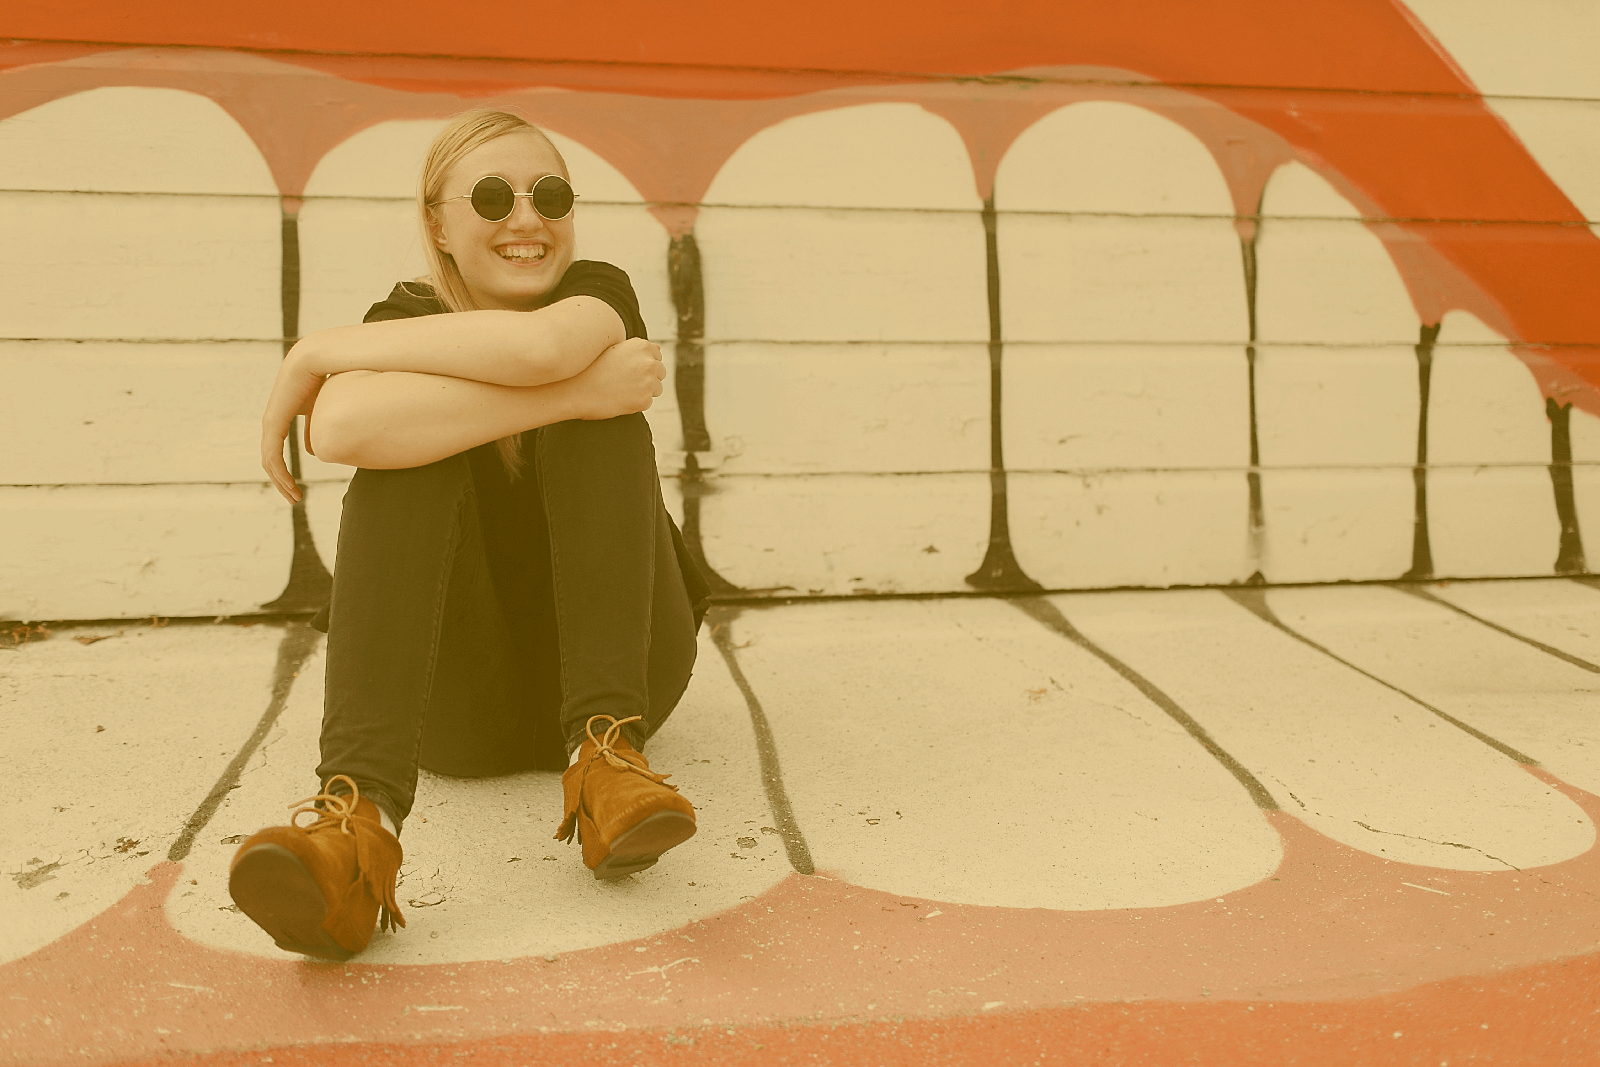 Eine junge Frau sitzt vor einem Garagentor auf dem Boden. Hinter und unter ihr befindet sich ein großes Grafiti von einem lachenden Mund.